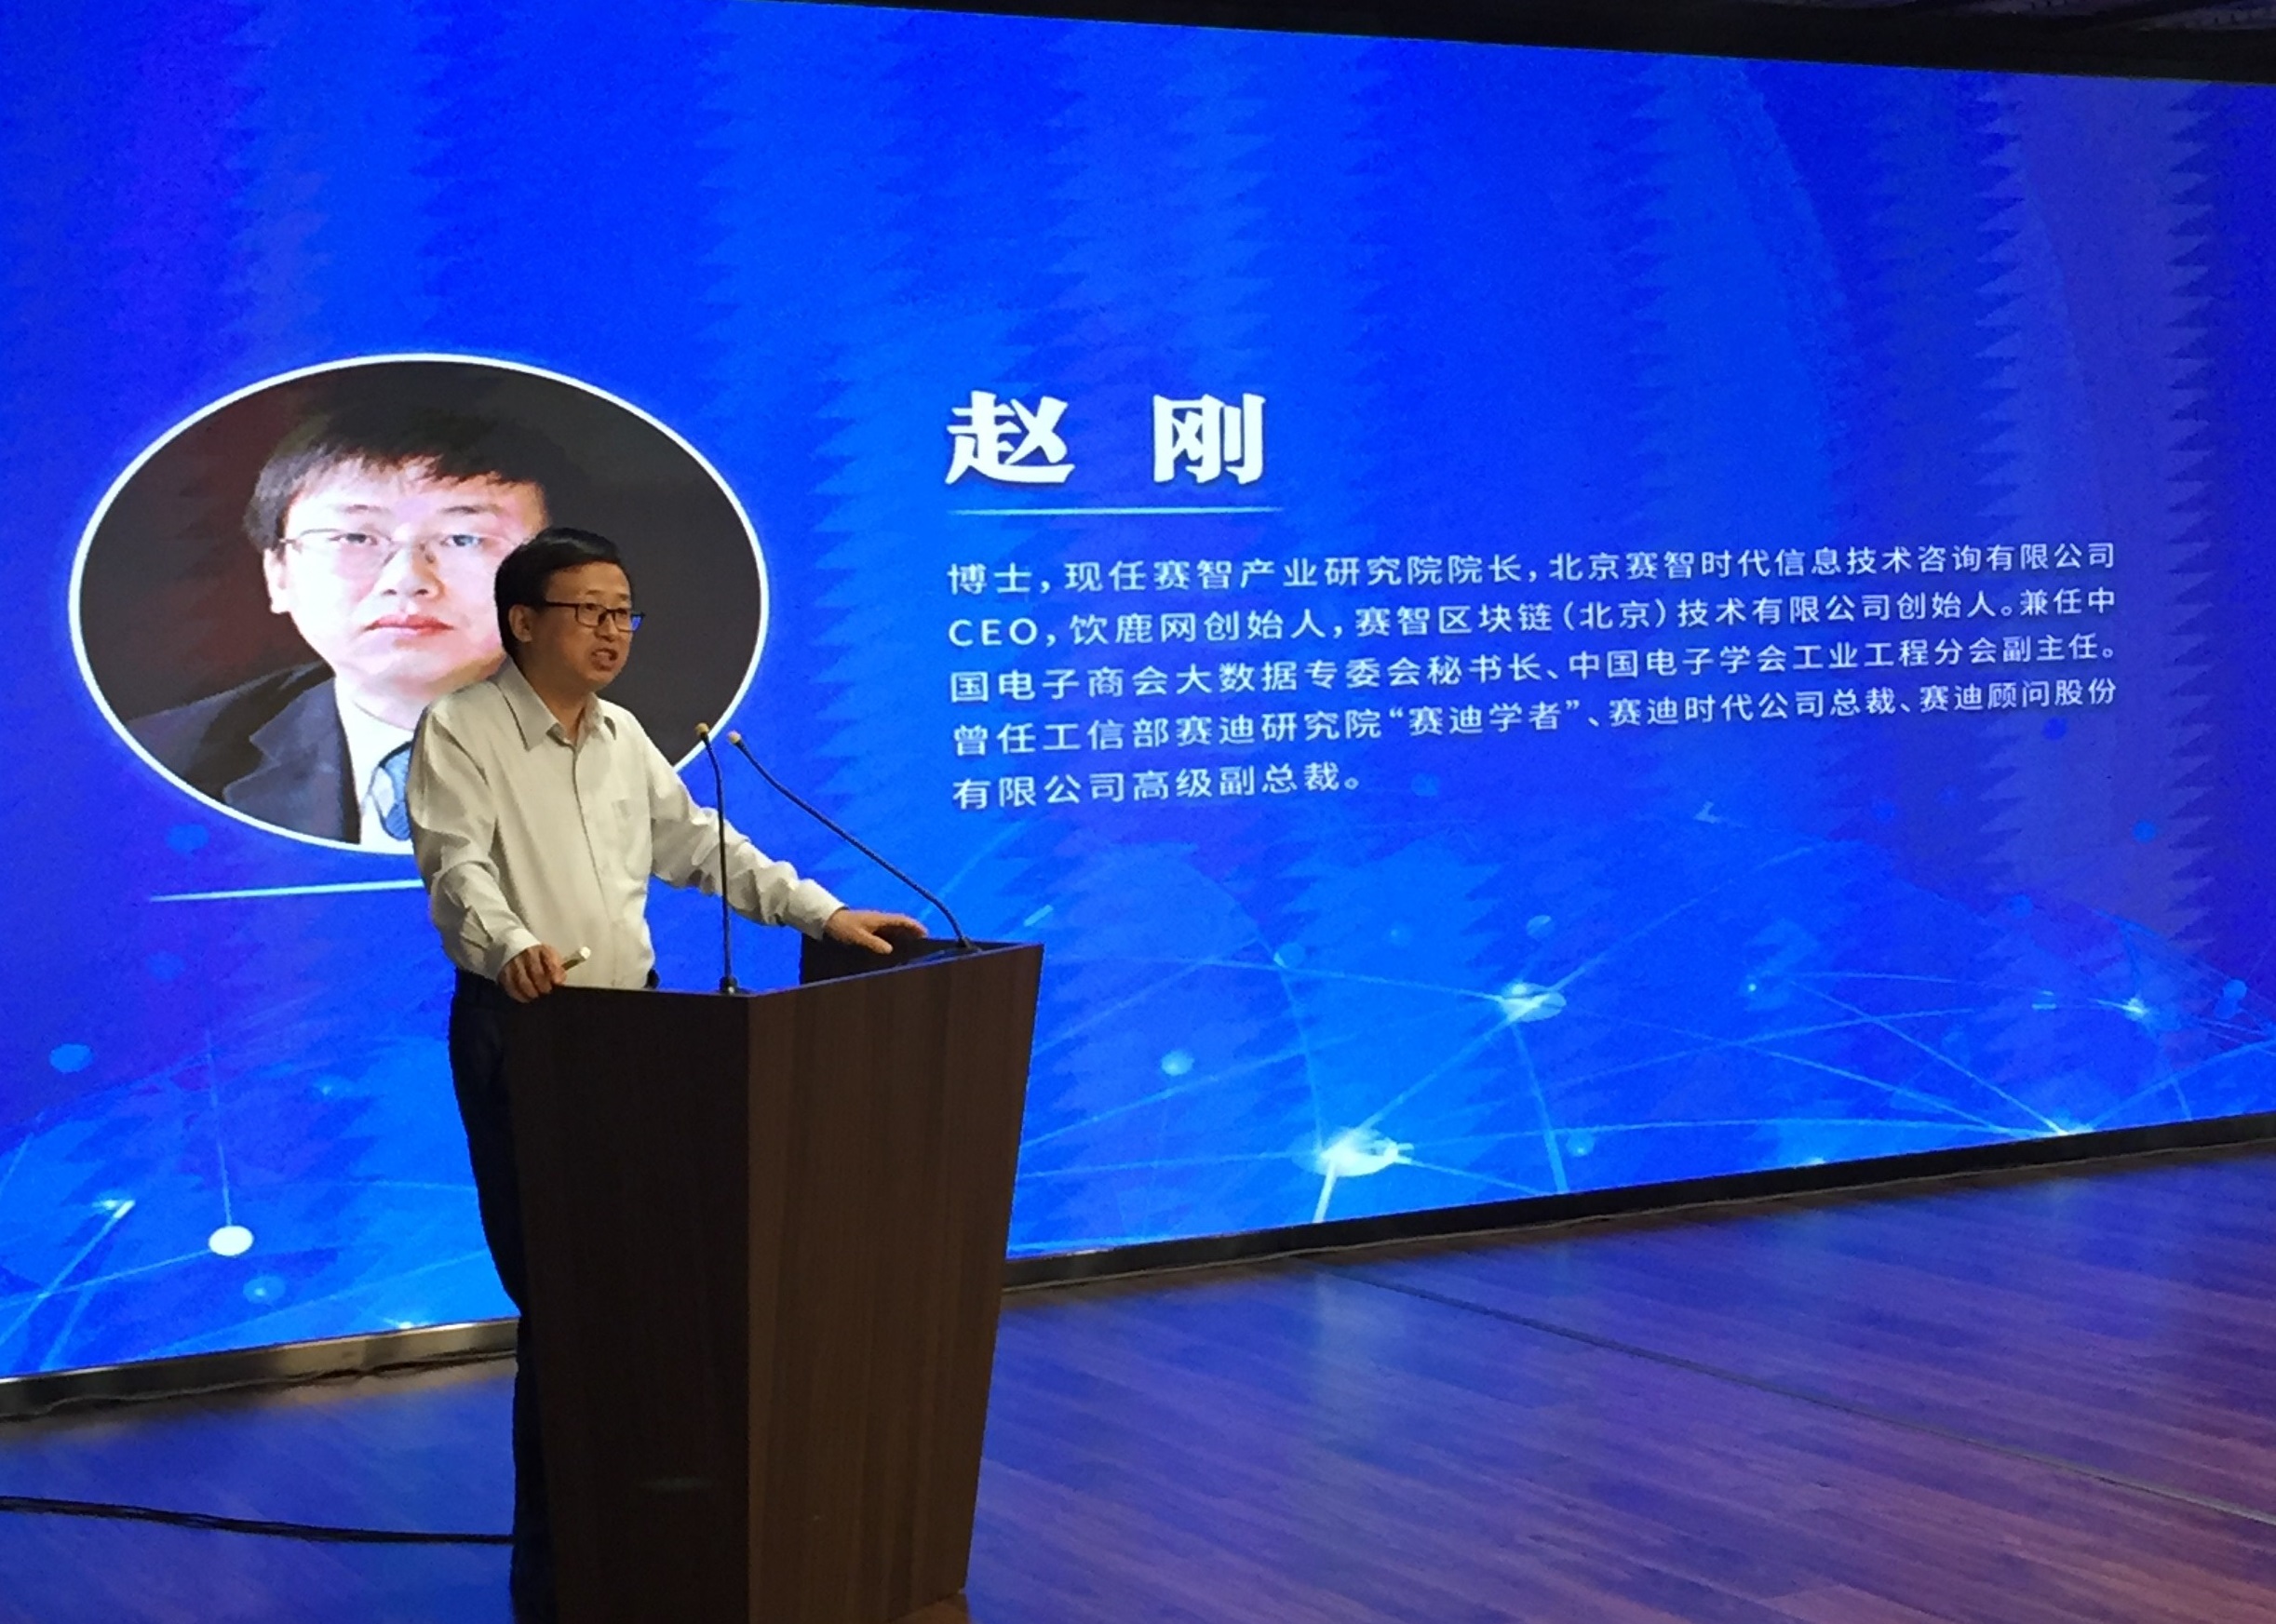 赛智时代CEO赵刚博士受邀参加由三部委联合举办的“实施国家大数据战略专题培训班”并担任演讲/对话主嘉宾